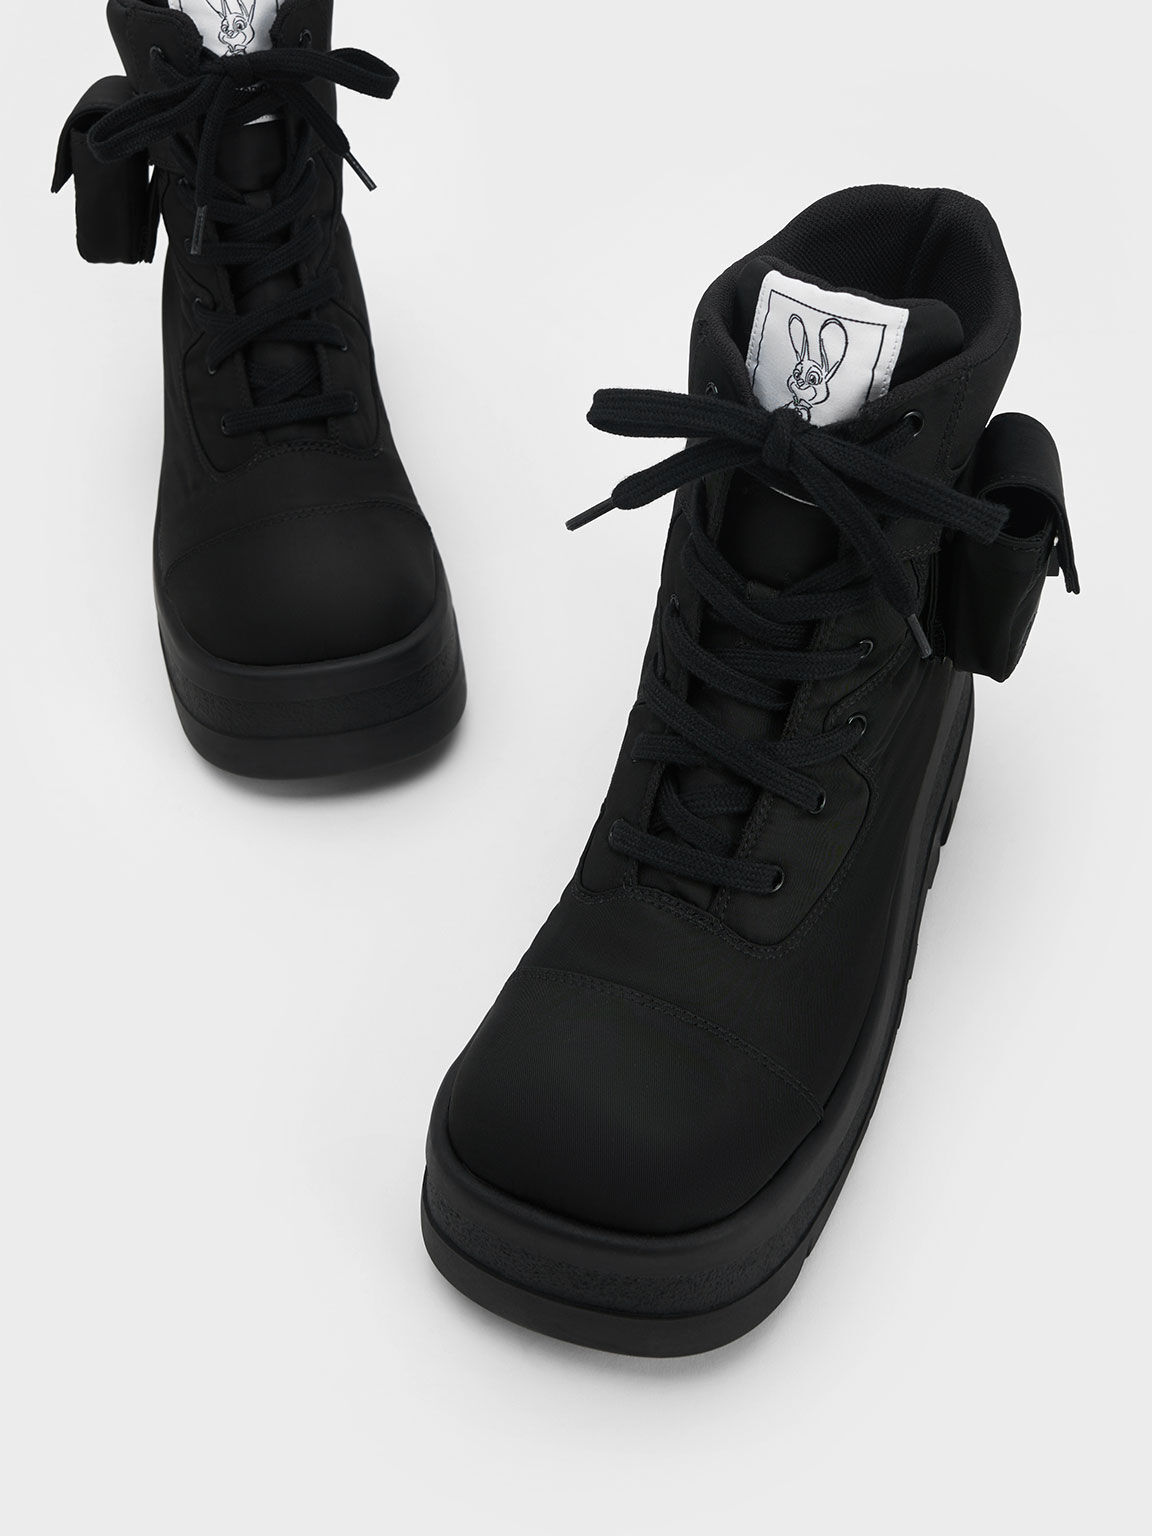 Judy Hopps Rainier Combat Boots, Black, hi-res